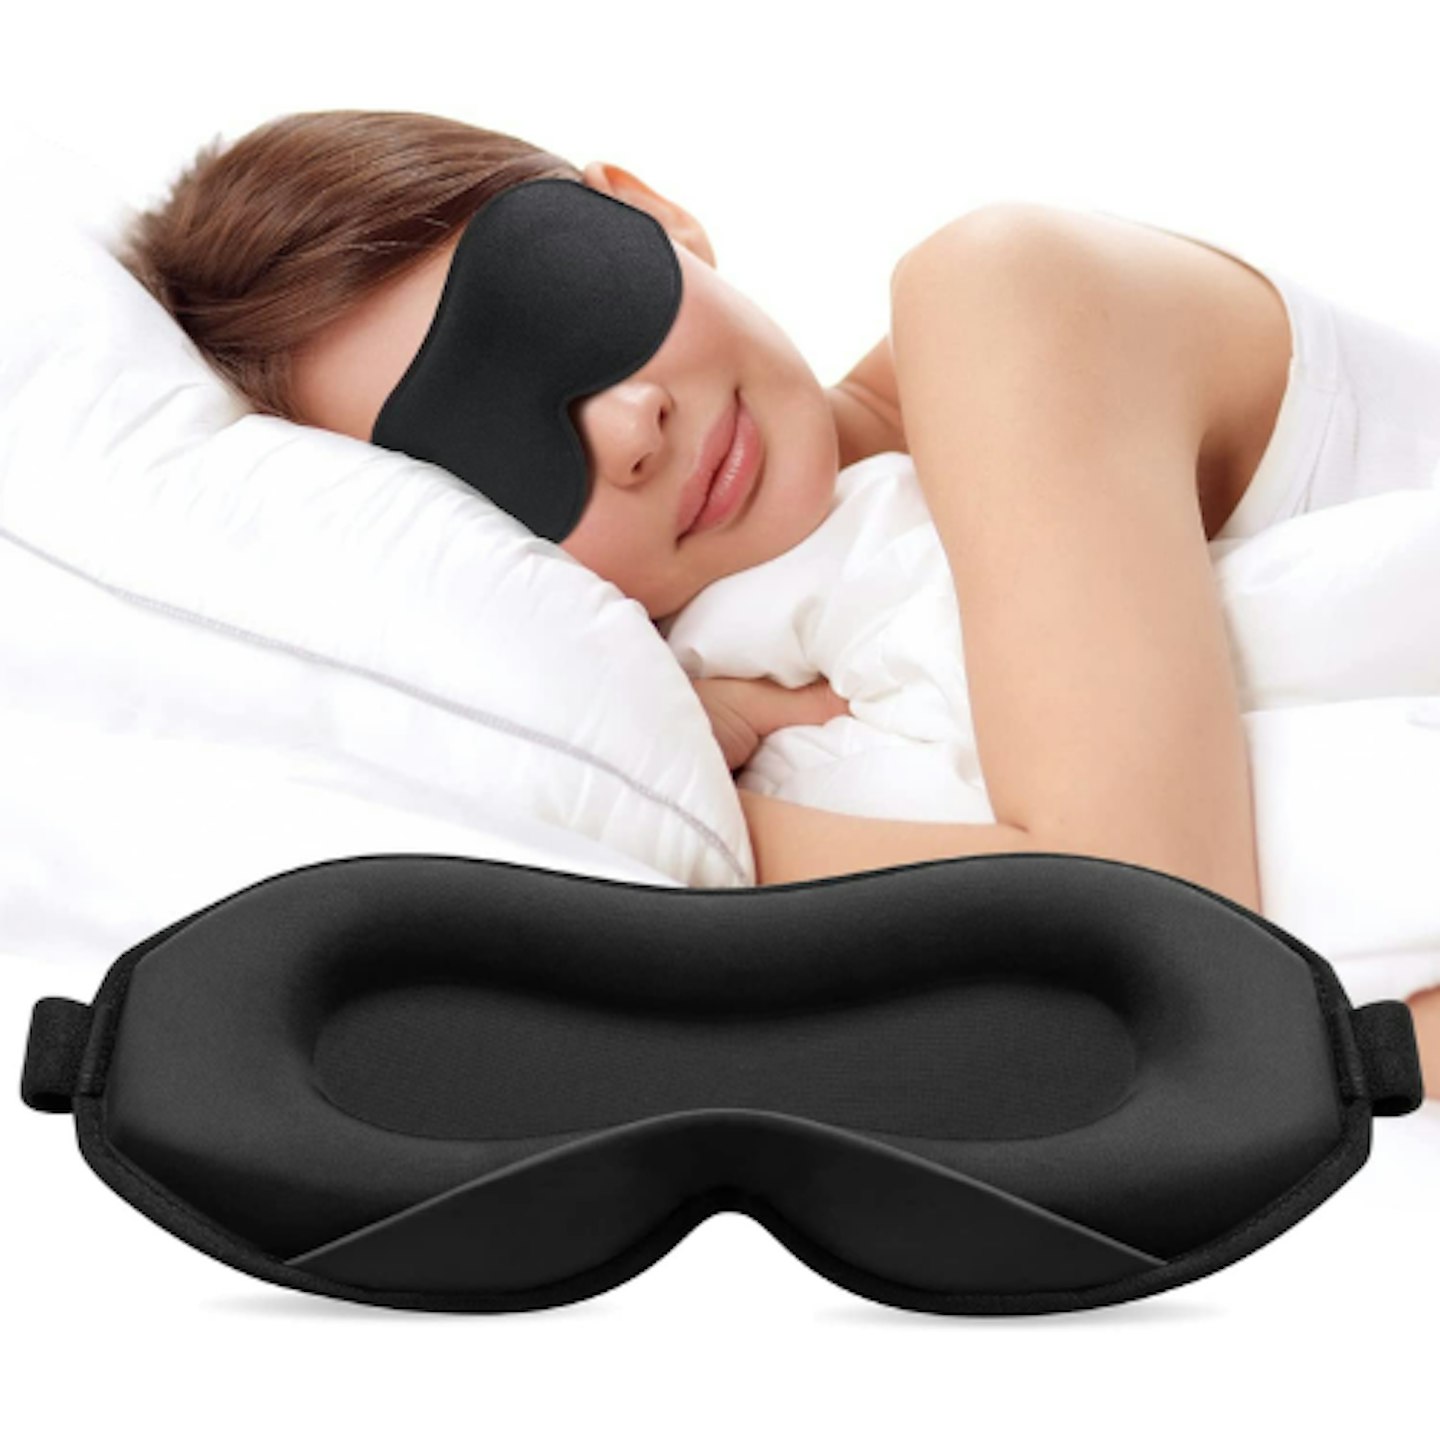 Umisleep 3D Upgraded Sleep Mask